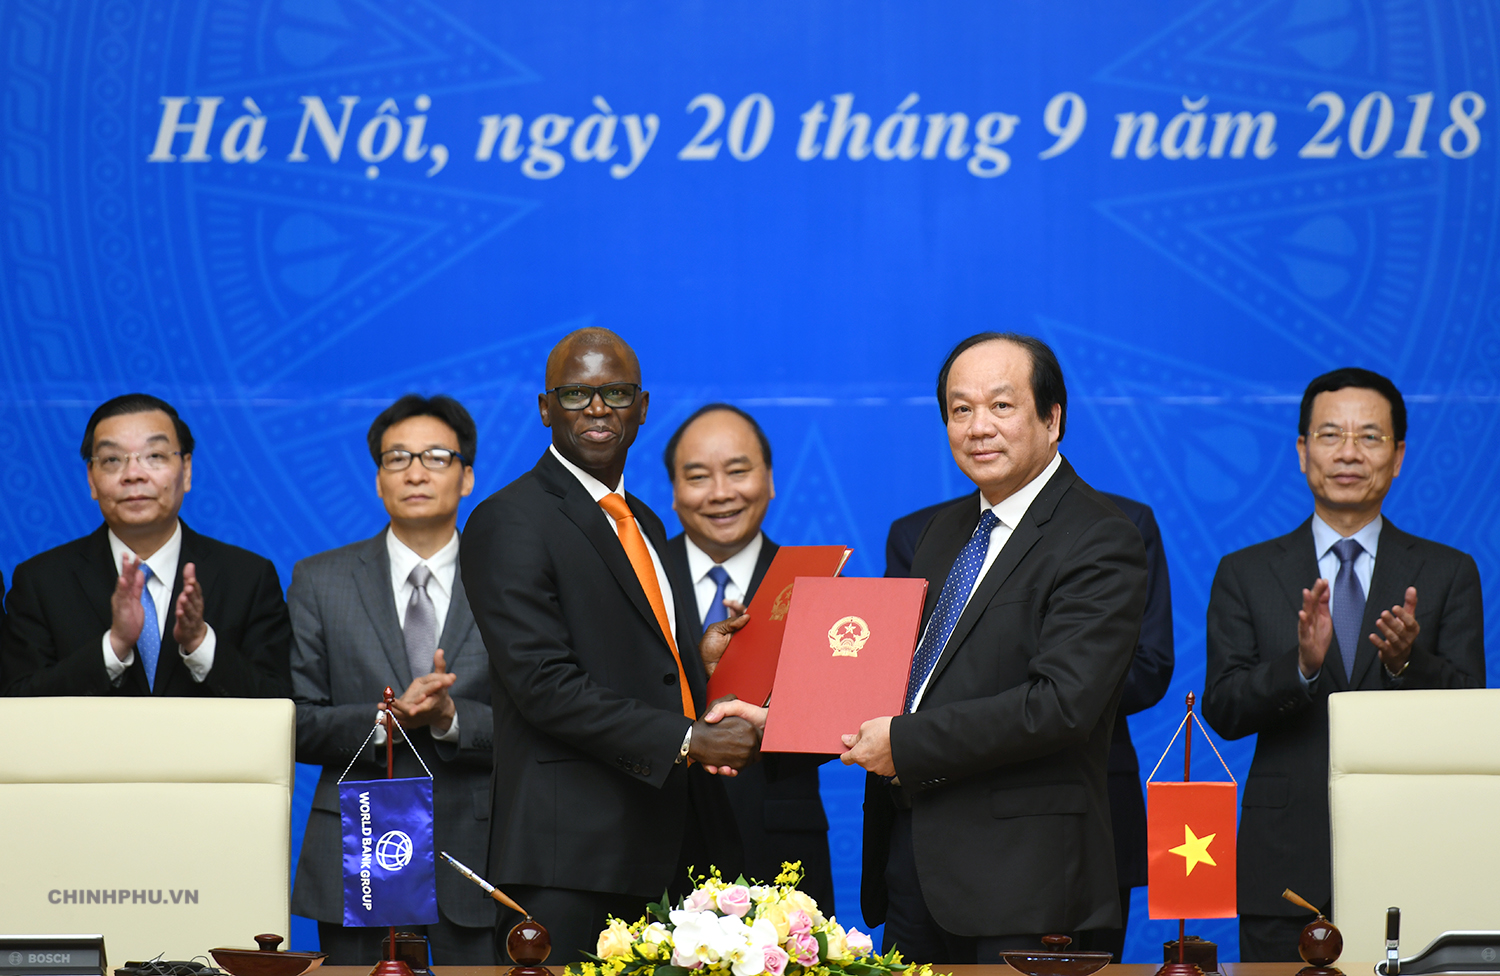 Thủ tướng chứng kiến ký kết thỏa thuận hợp tác trong lĩnh vực Chính phủ điện tử giữa VPCP với Ngân hàng Thế giới tại Việt Nam